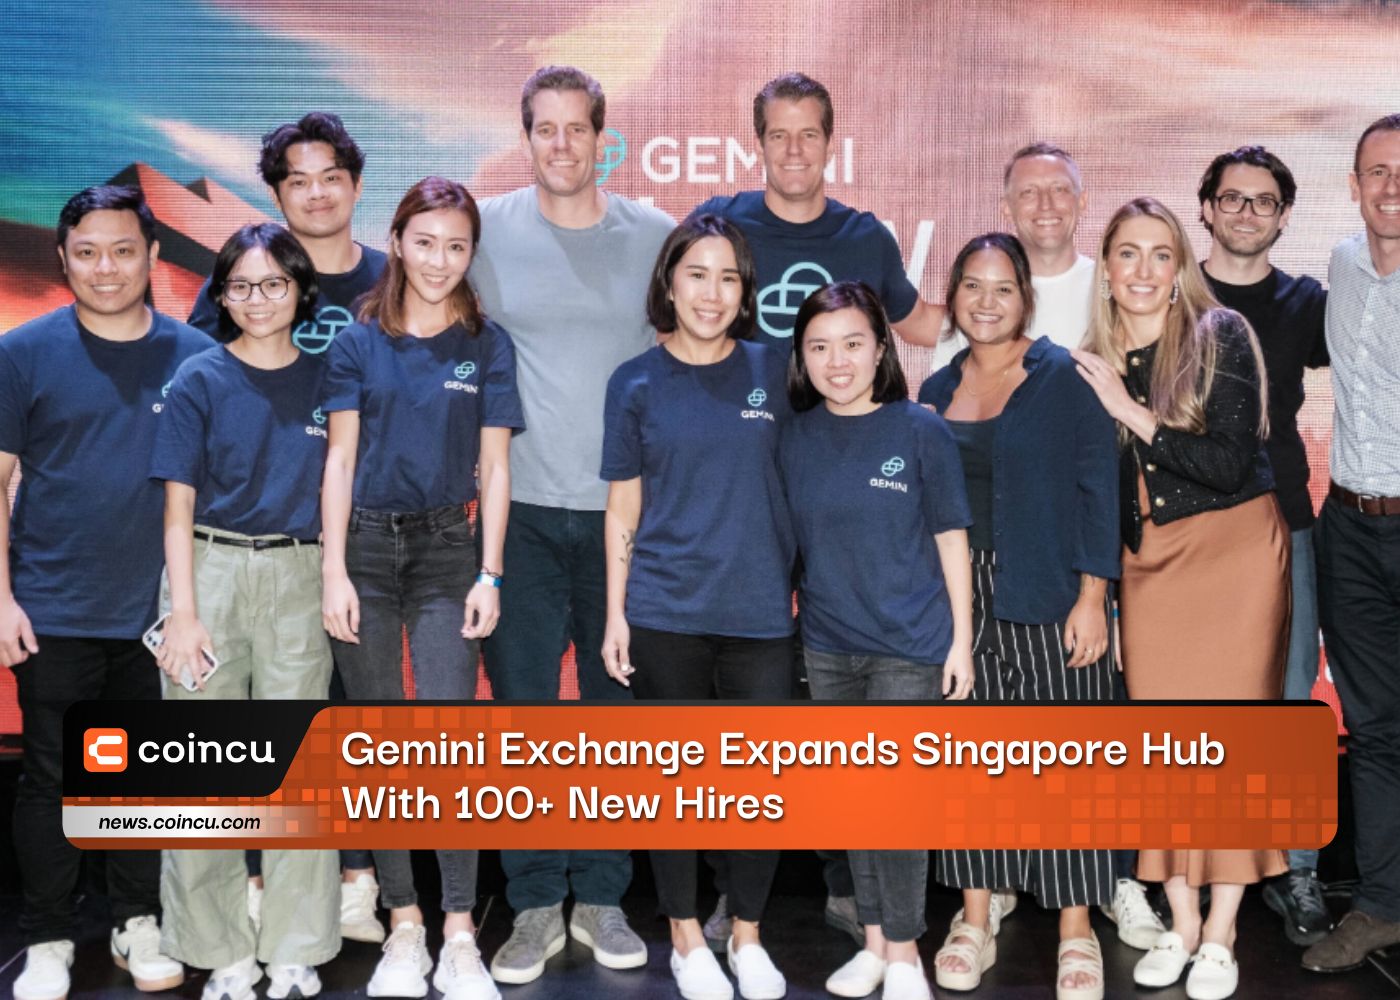 Gemini Exchange amplía su centro de operaciones en Singapur con más de 100 nuevas contrataciones